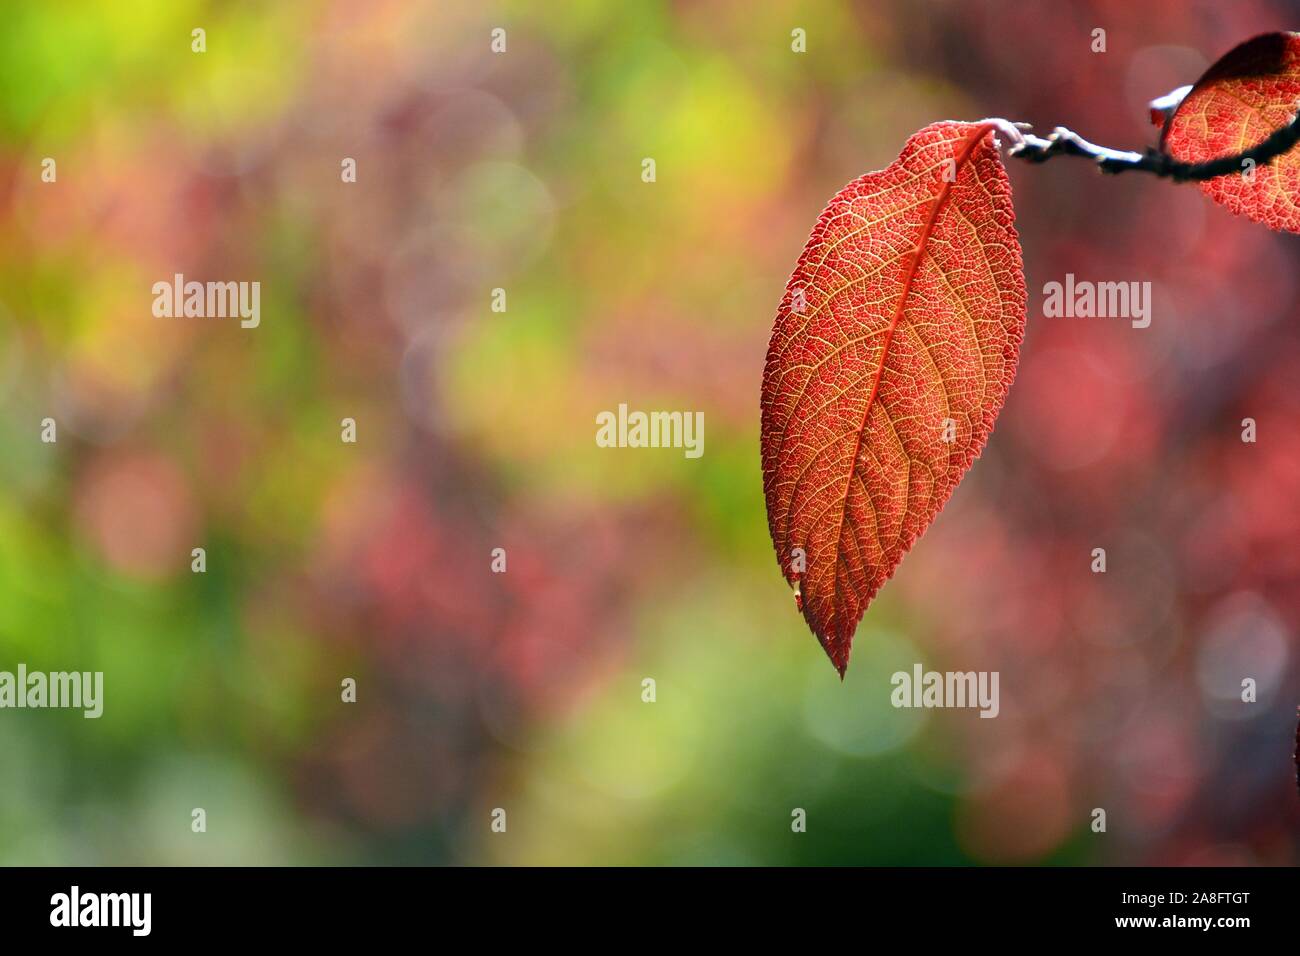 Hojas de ciruelo rojo en otoño Stock Photo